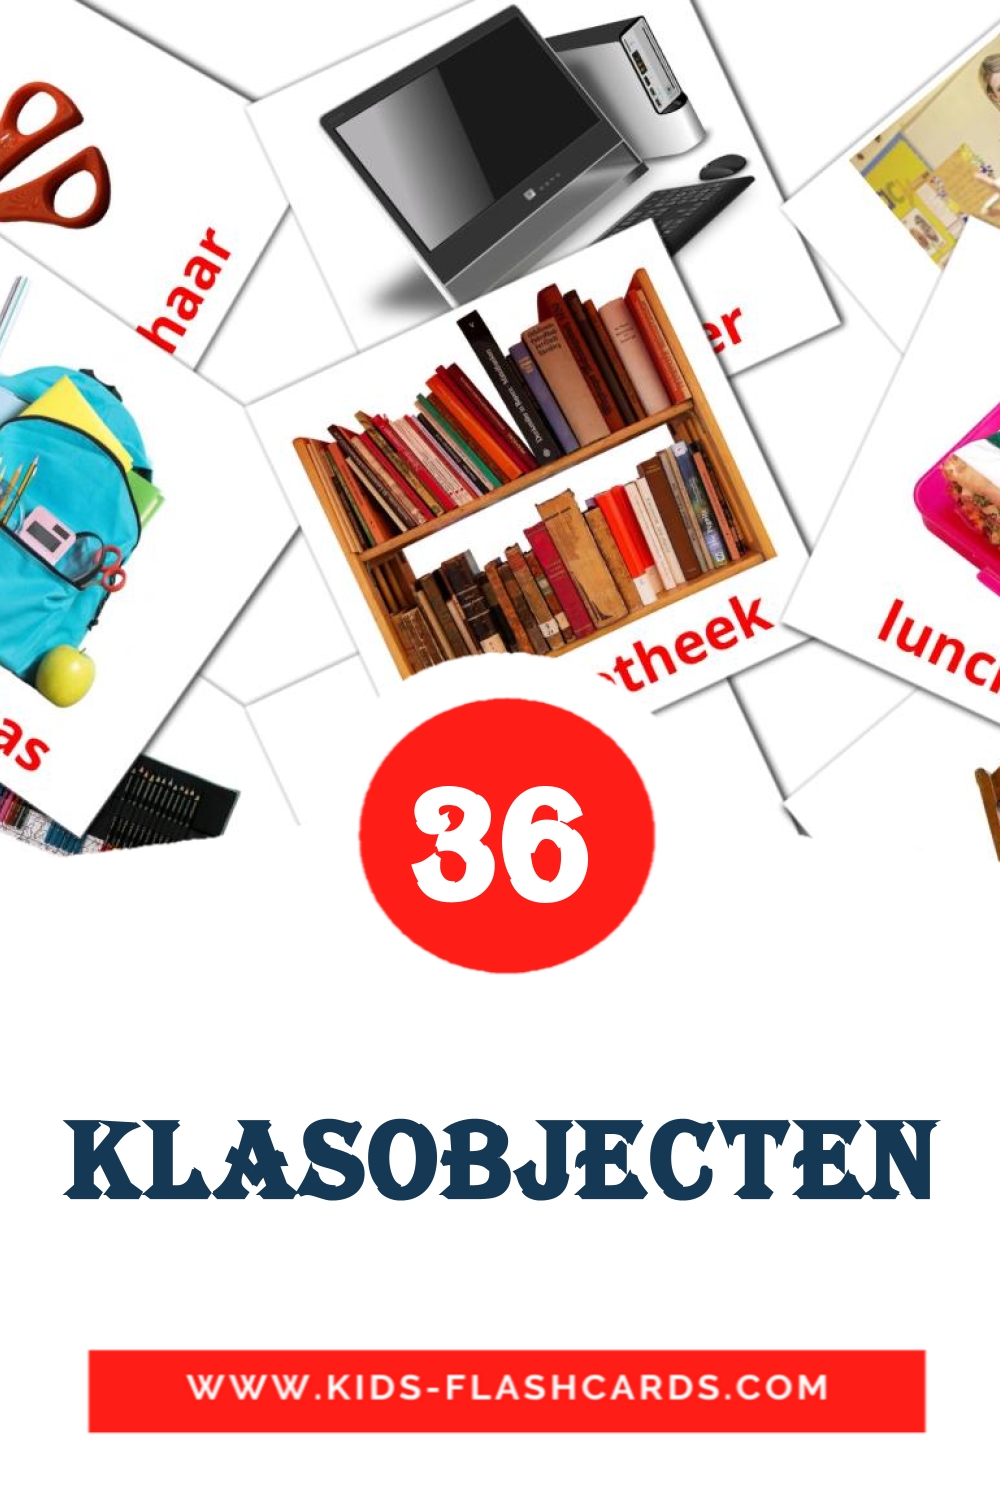 36 carte illustrate di Klasobjecten per la scuola materna in olandese